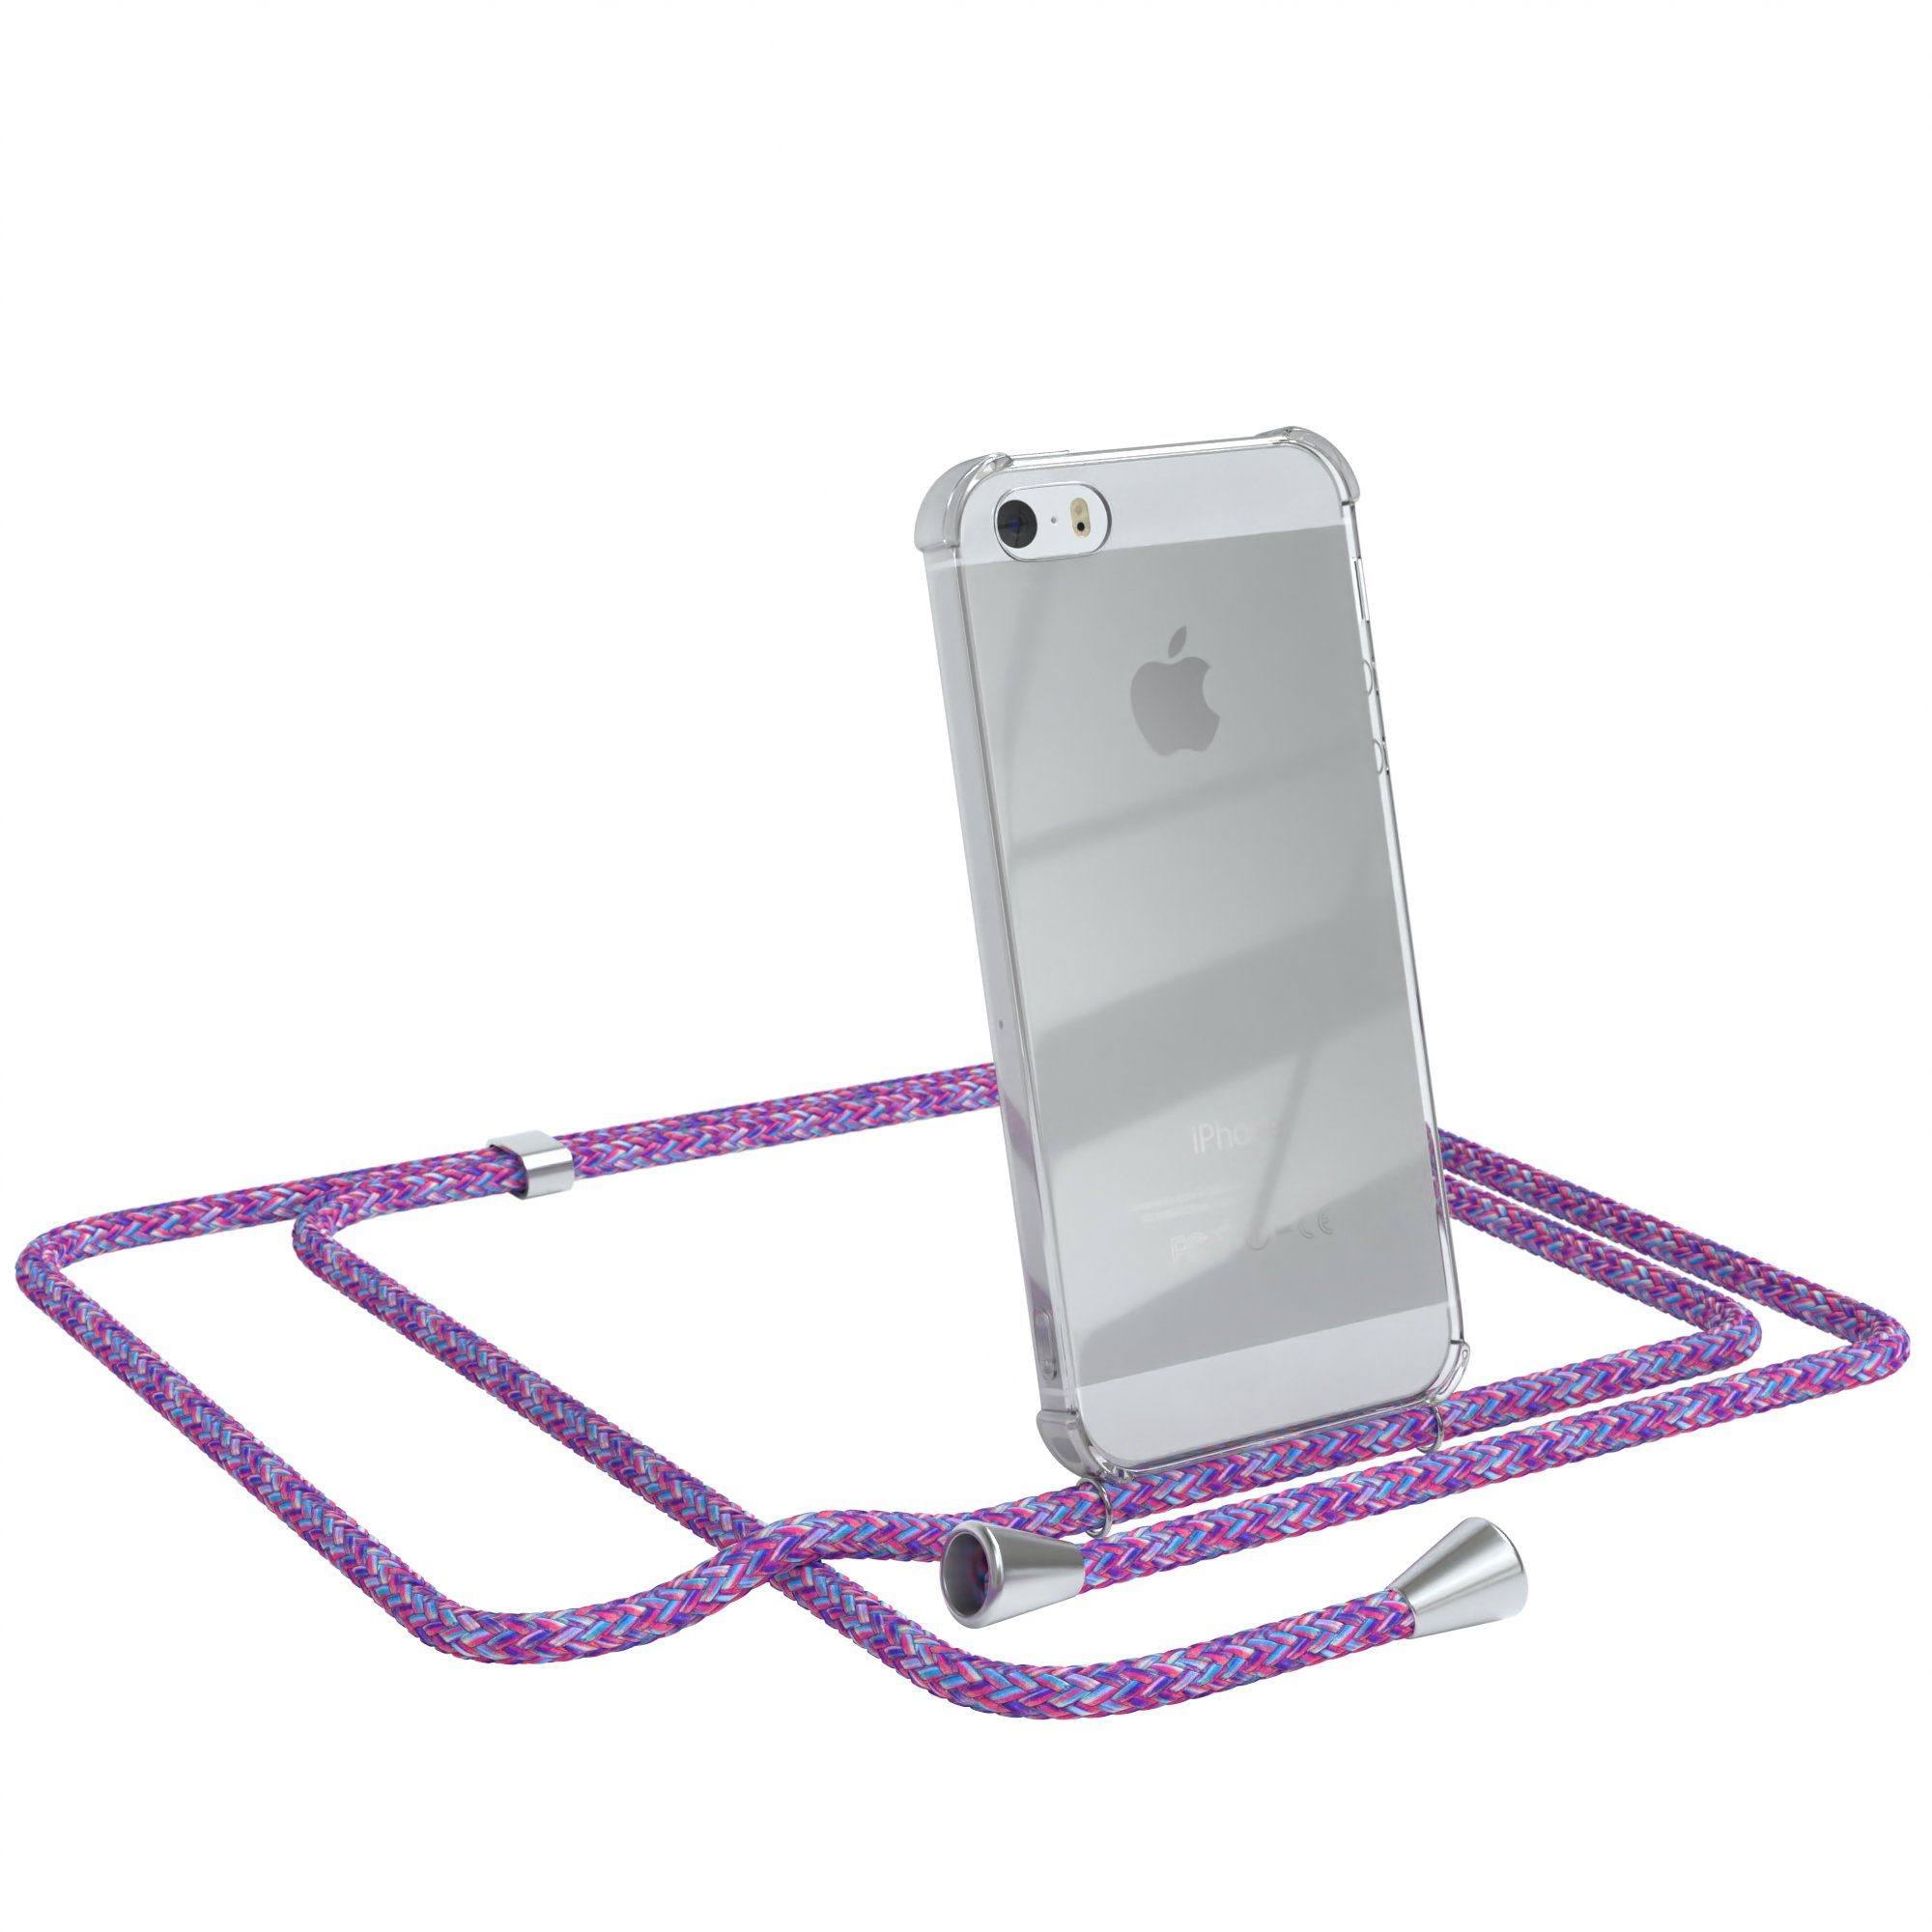 EAZY CASE Handykette Hülle mit Kette für iPhone SE 2016, iPhone 5 / 5S 4,0  Zoll, Umhängetasche für Handy Silikonhülle Handyhülle durchsichtig Violett